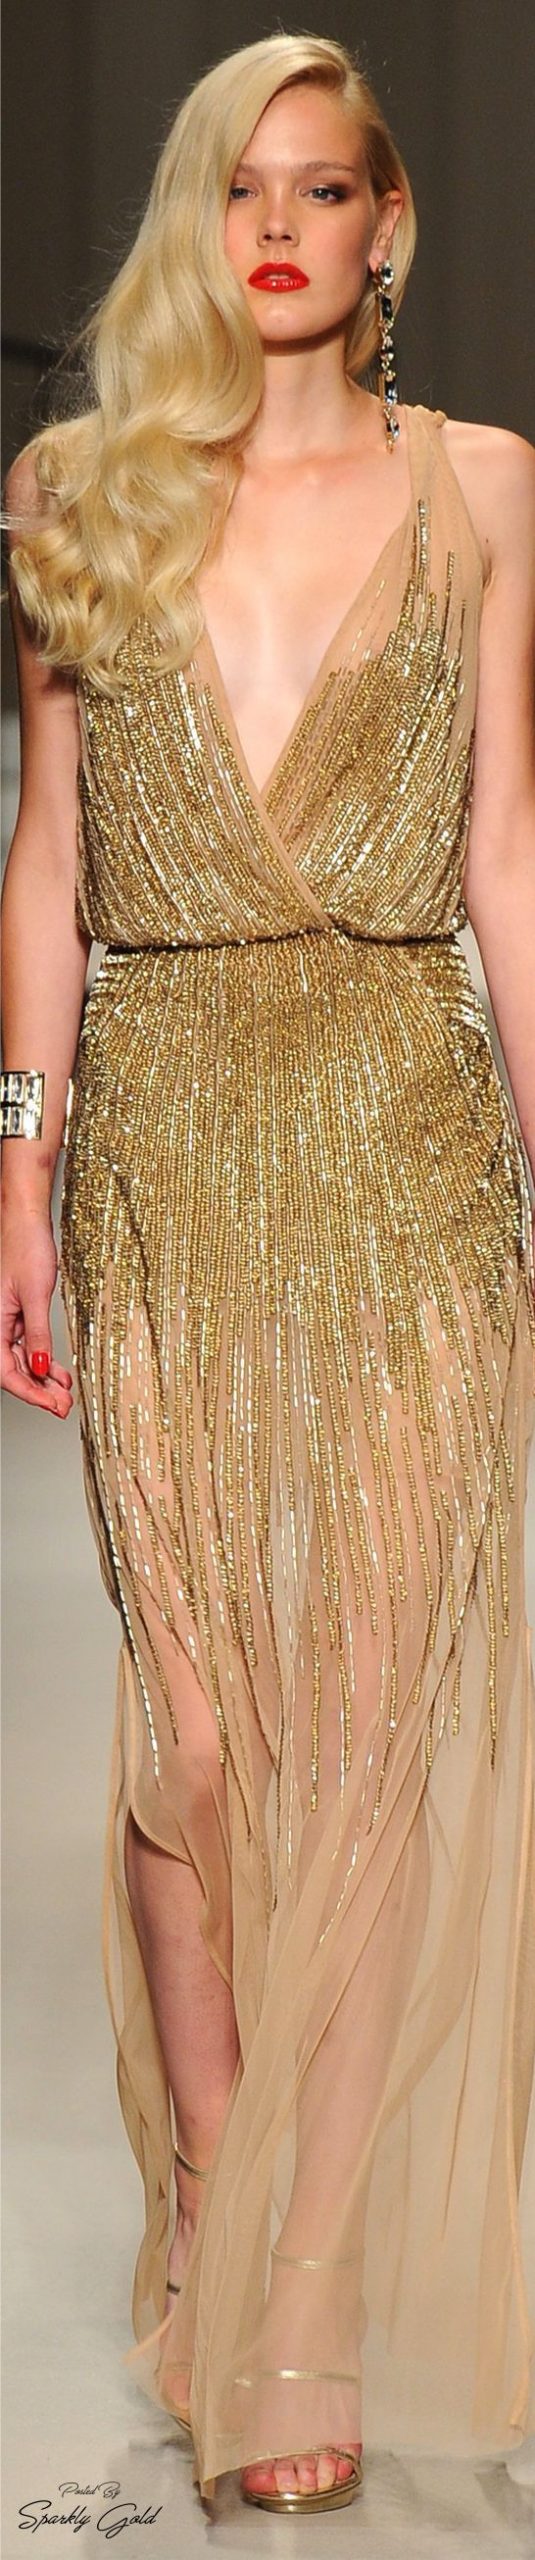 Pin Von Ravena Auf Shiny Fashion In Gold  Edle Kleider